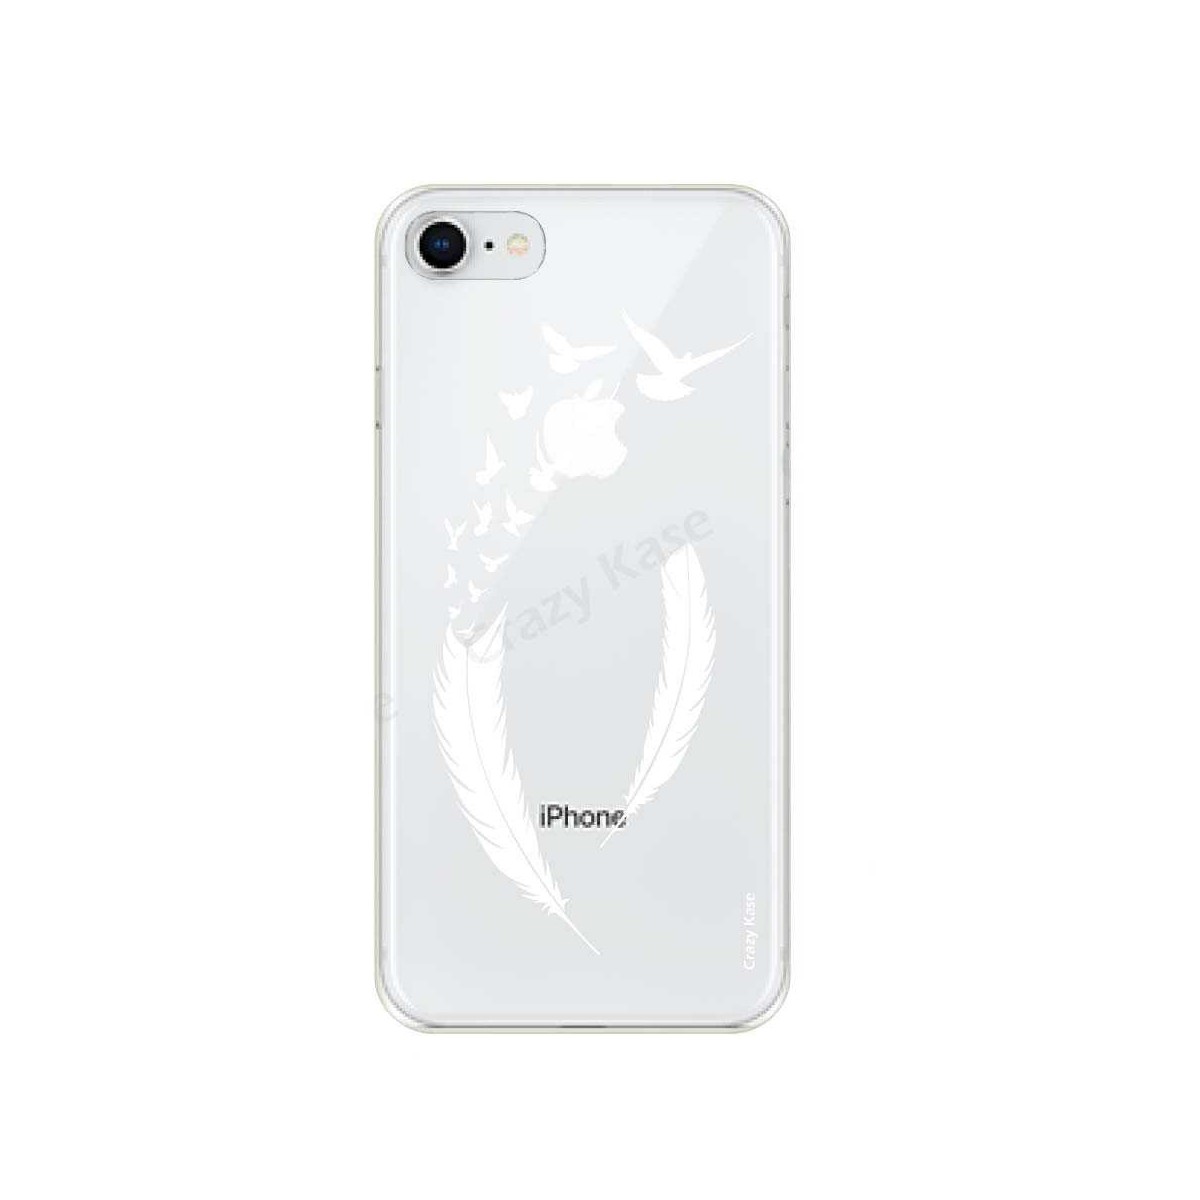 Coque iPhone 8 souple motif Plume et envol d'oiseaux - Crazy Kase